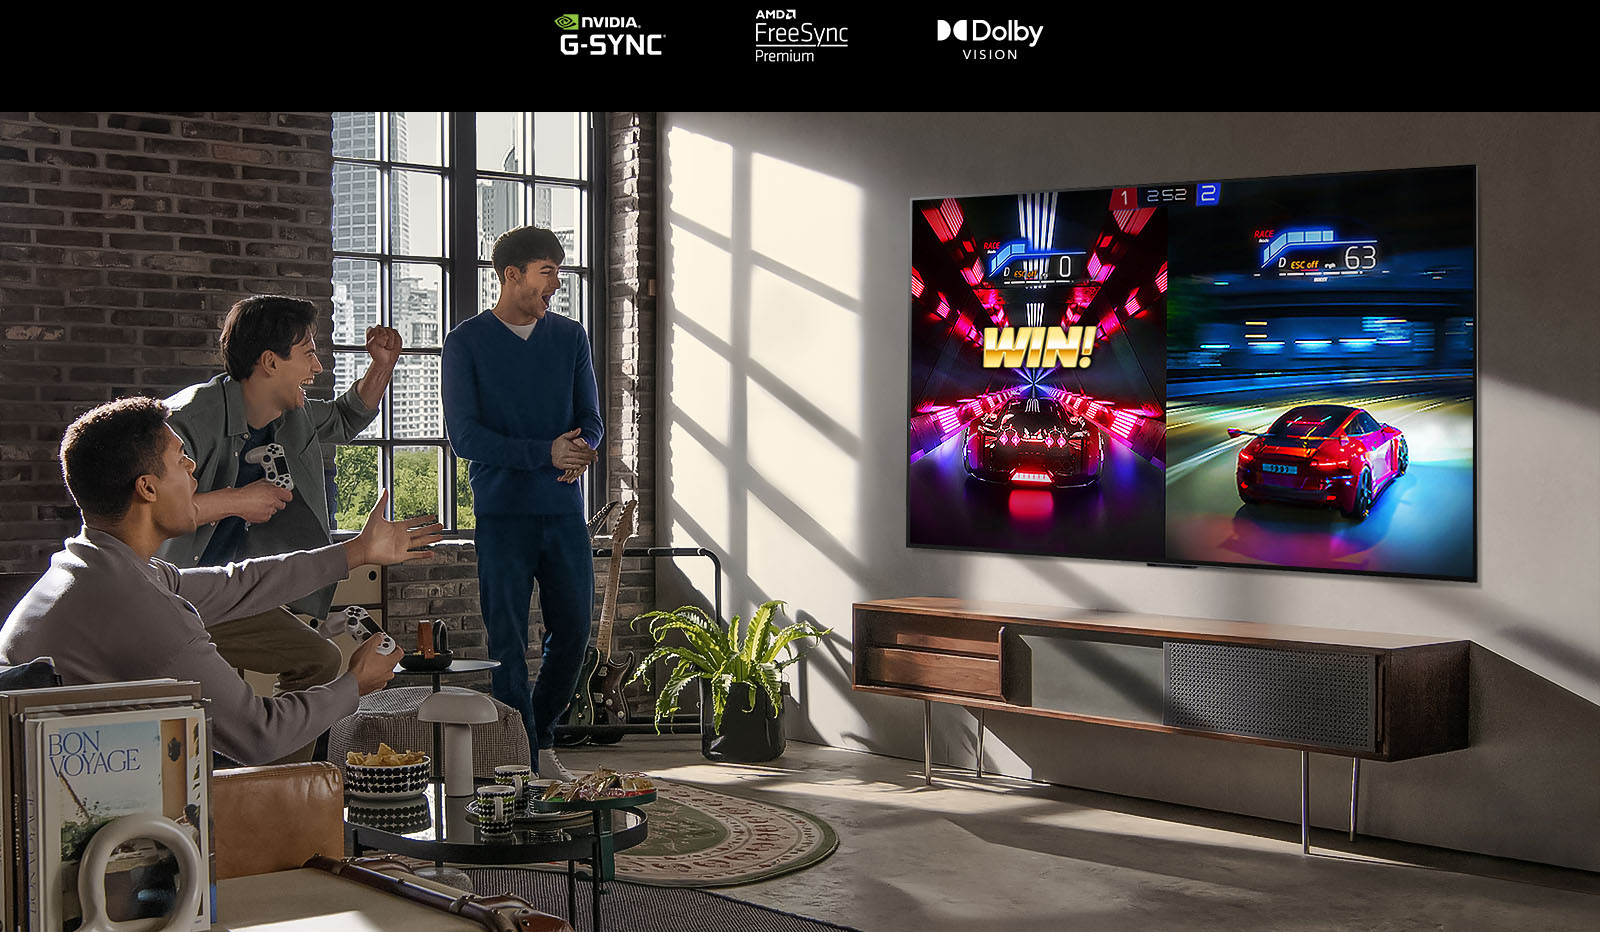 Obrázek tří mužů, kteří v moderním městském bytě hrají na televizoru LG OLED závodní hru.